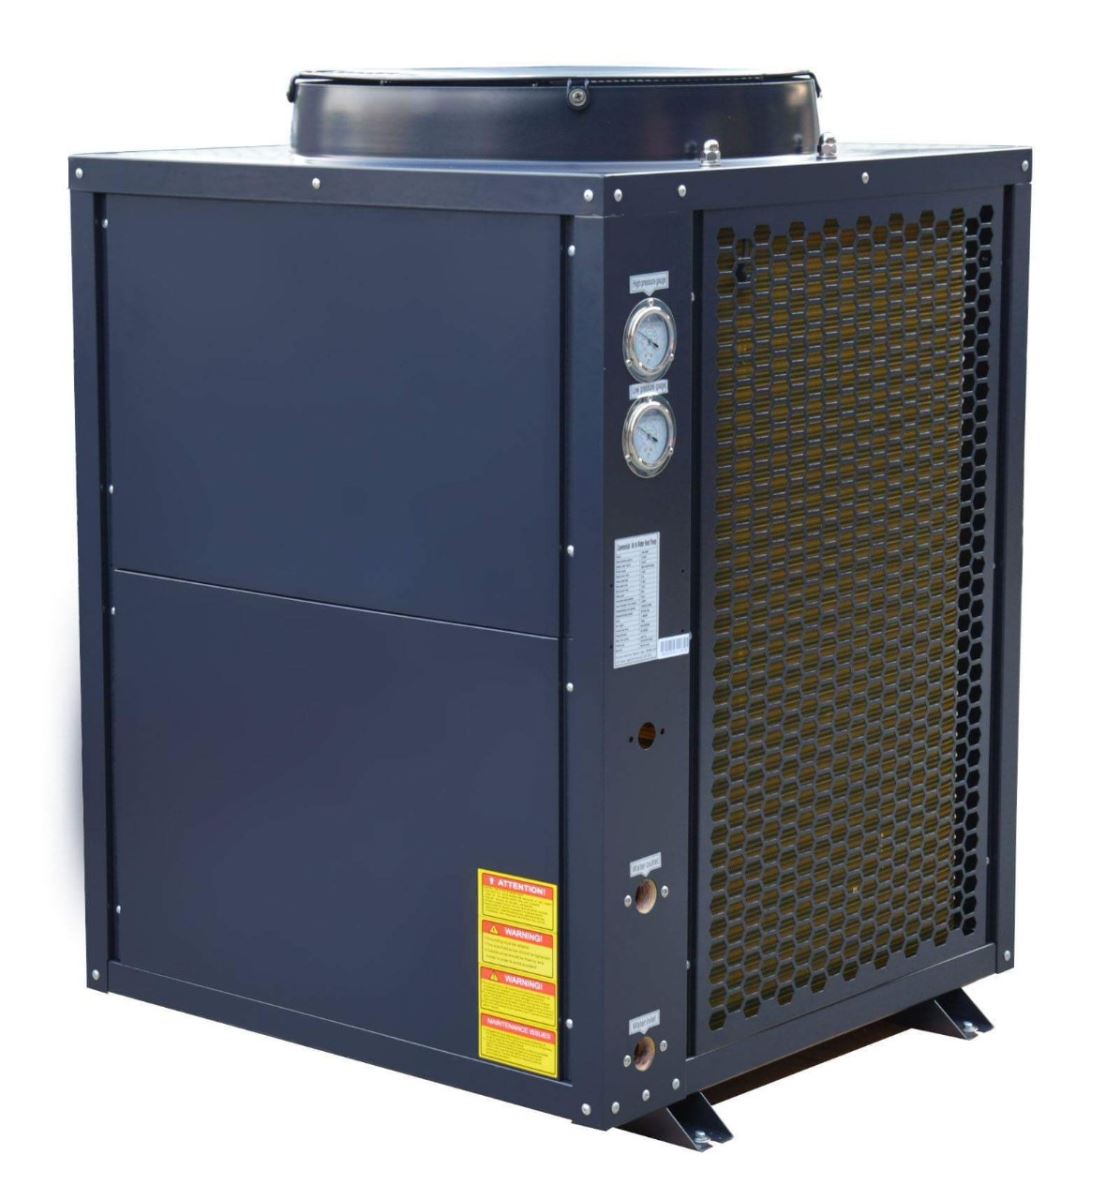 Thi công lắp đặt hệ thống máy nước nóng trung tâm chuyên nghiệp tại Hà Nội - Ảnh 1